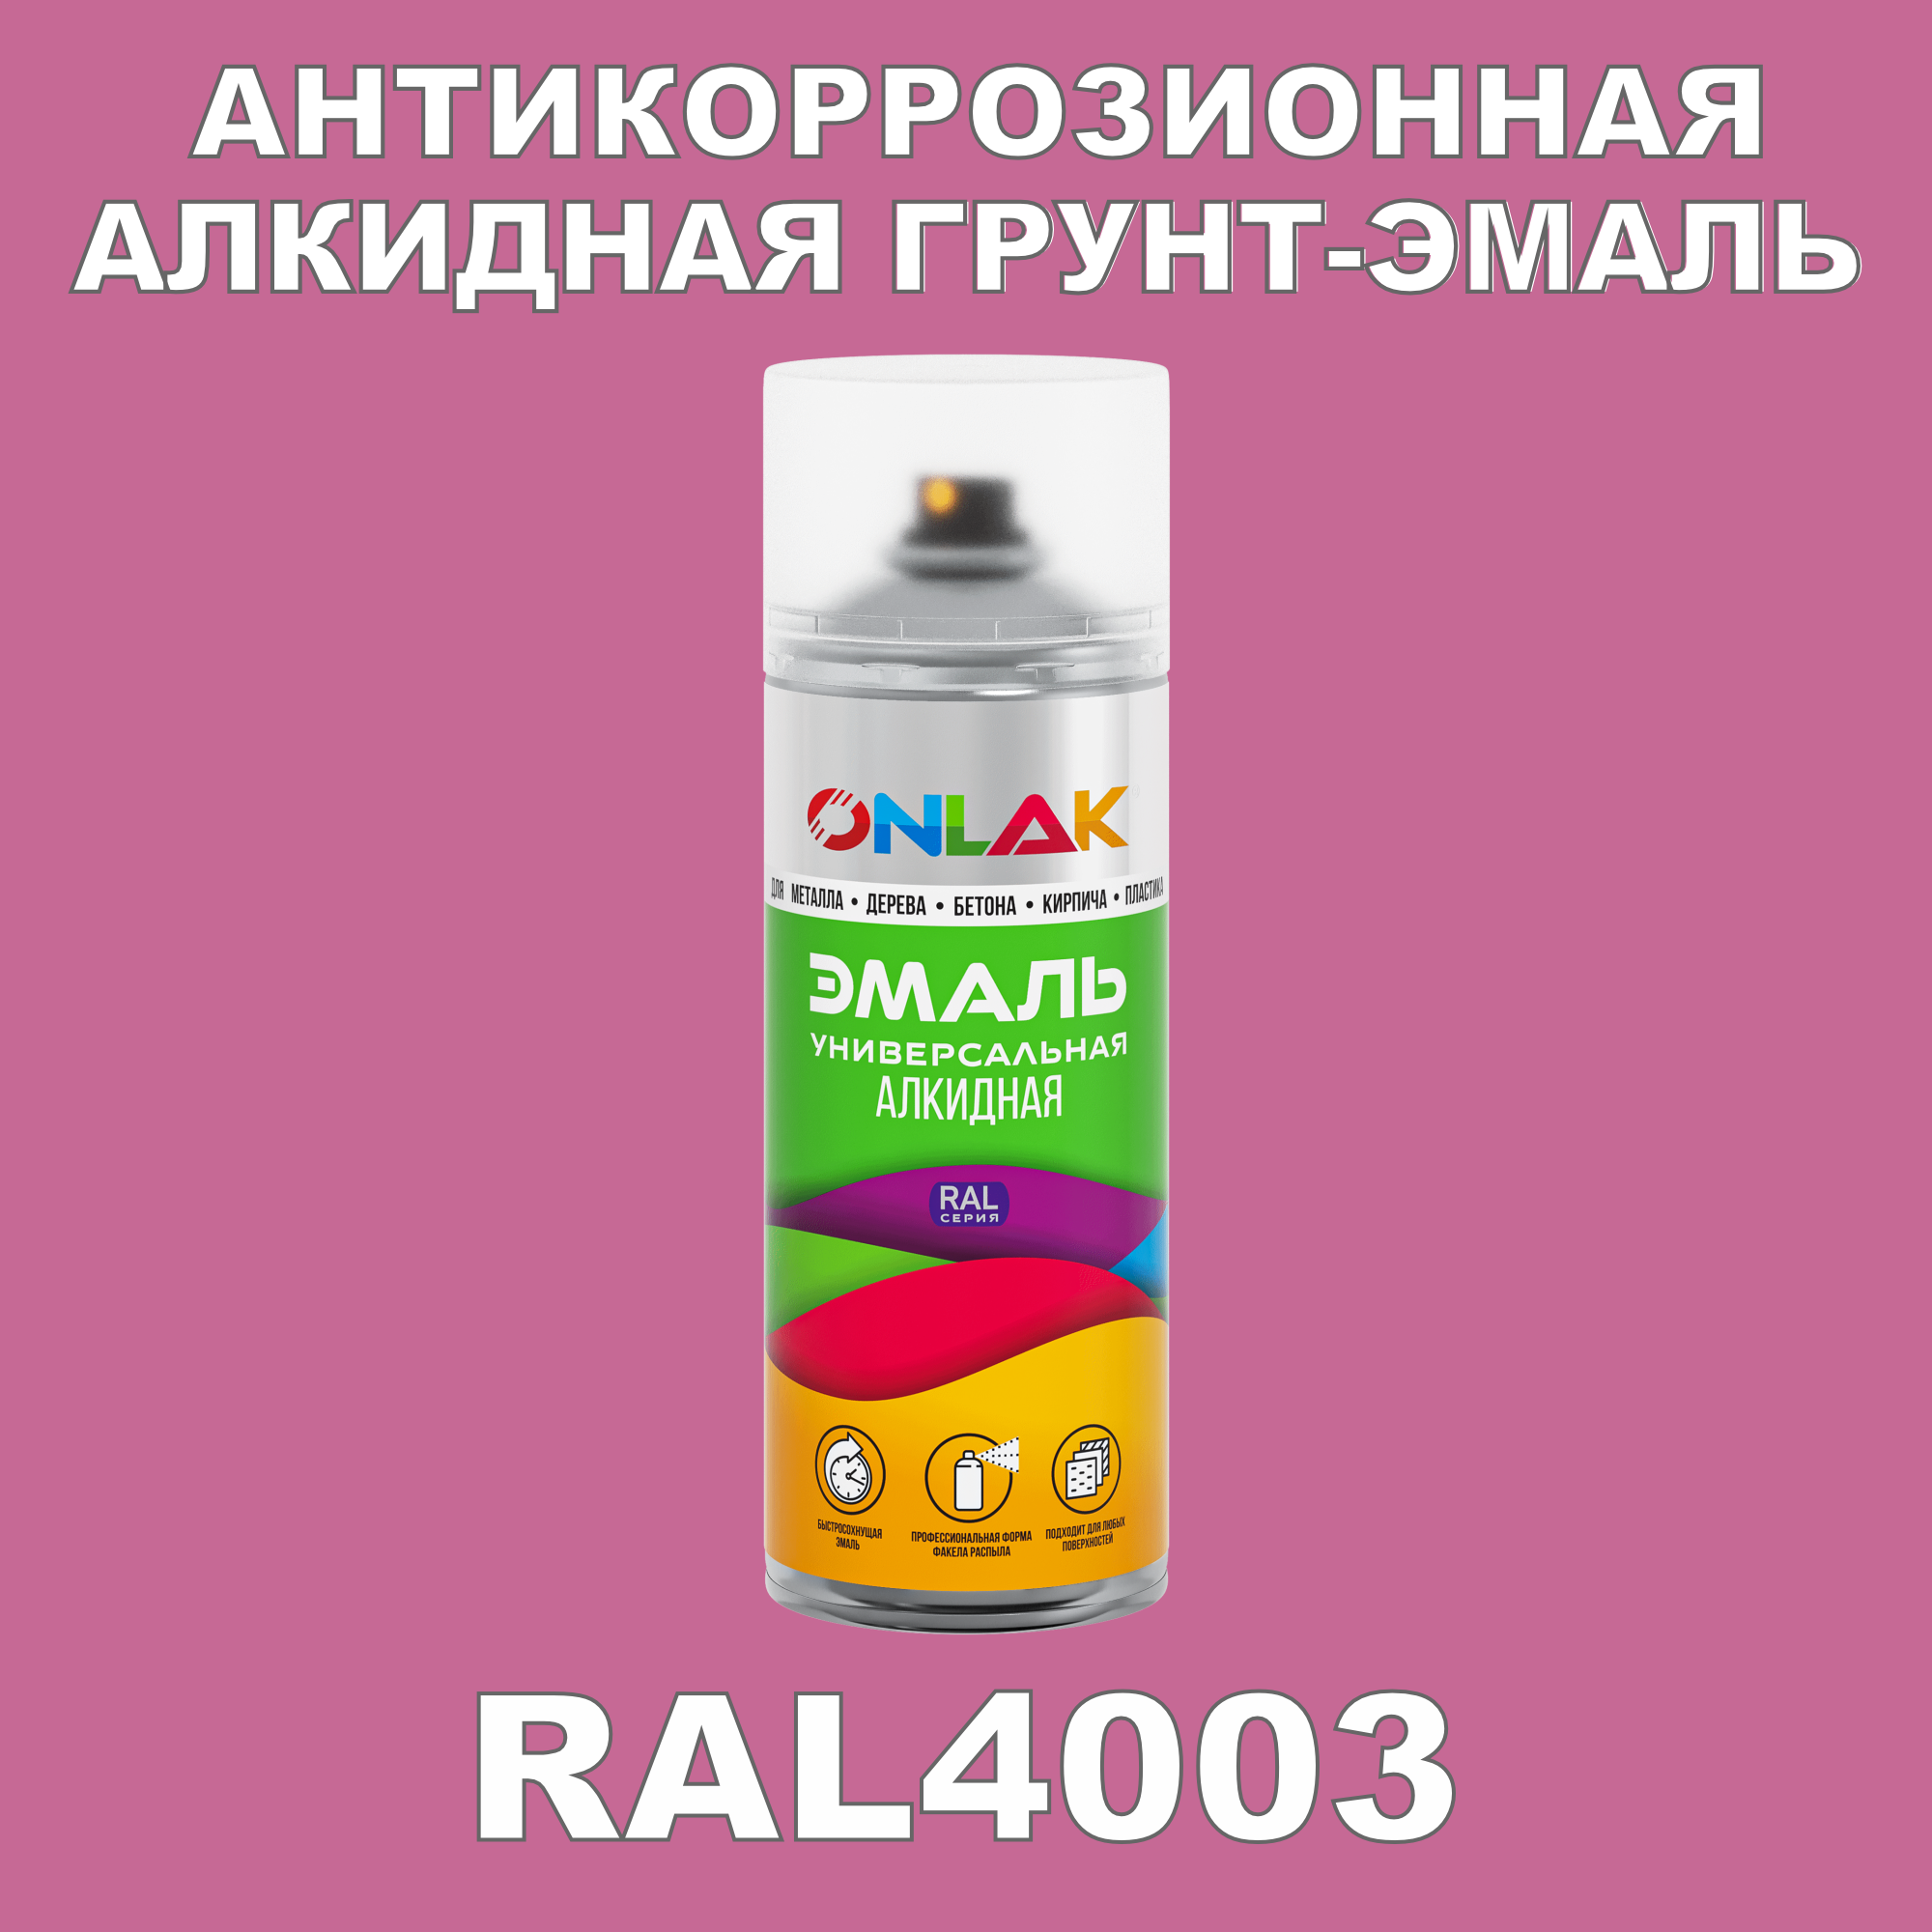 Антикоррозионная грунт-эмаль ONLAK RAL 4003,фиолетовый,542 мл рюкзак детский на молнии 3 наружных кармана цвет фиолетовый